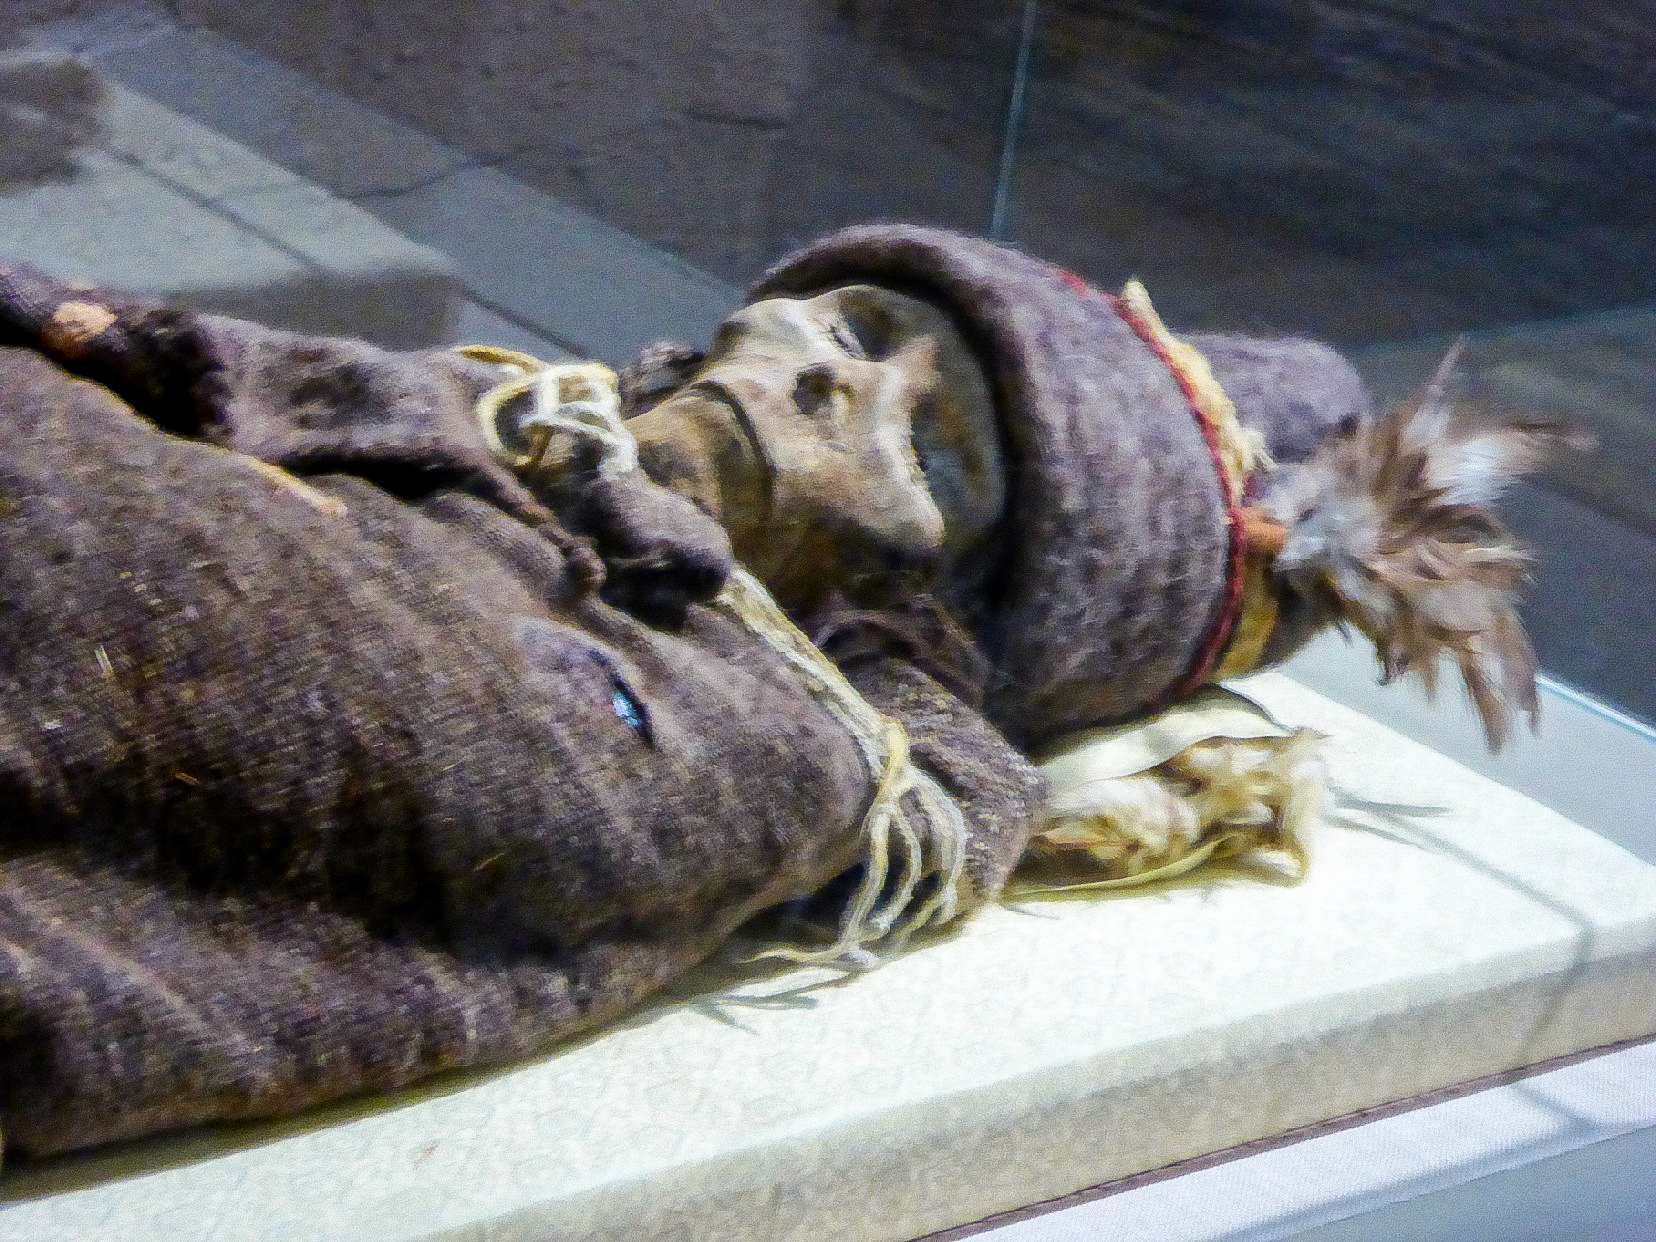 "Xiaohe Mummy", რომელიც გამოფენილია სინძიანის მუზეუმში, არის ერთ-ერთი უძველესი ტარიმის მუმია, რომელიც თარიღდება 3800 წელზე მეტი ხნის წინ.